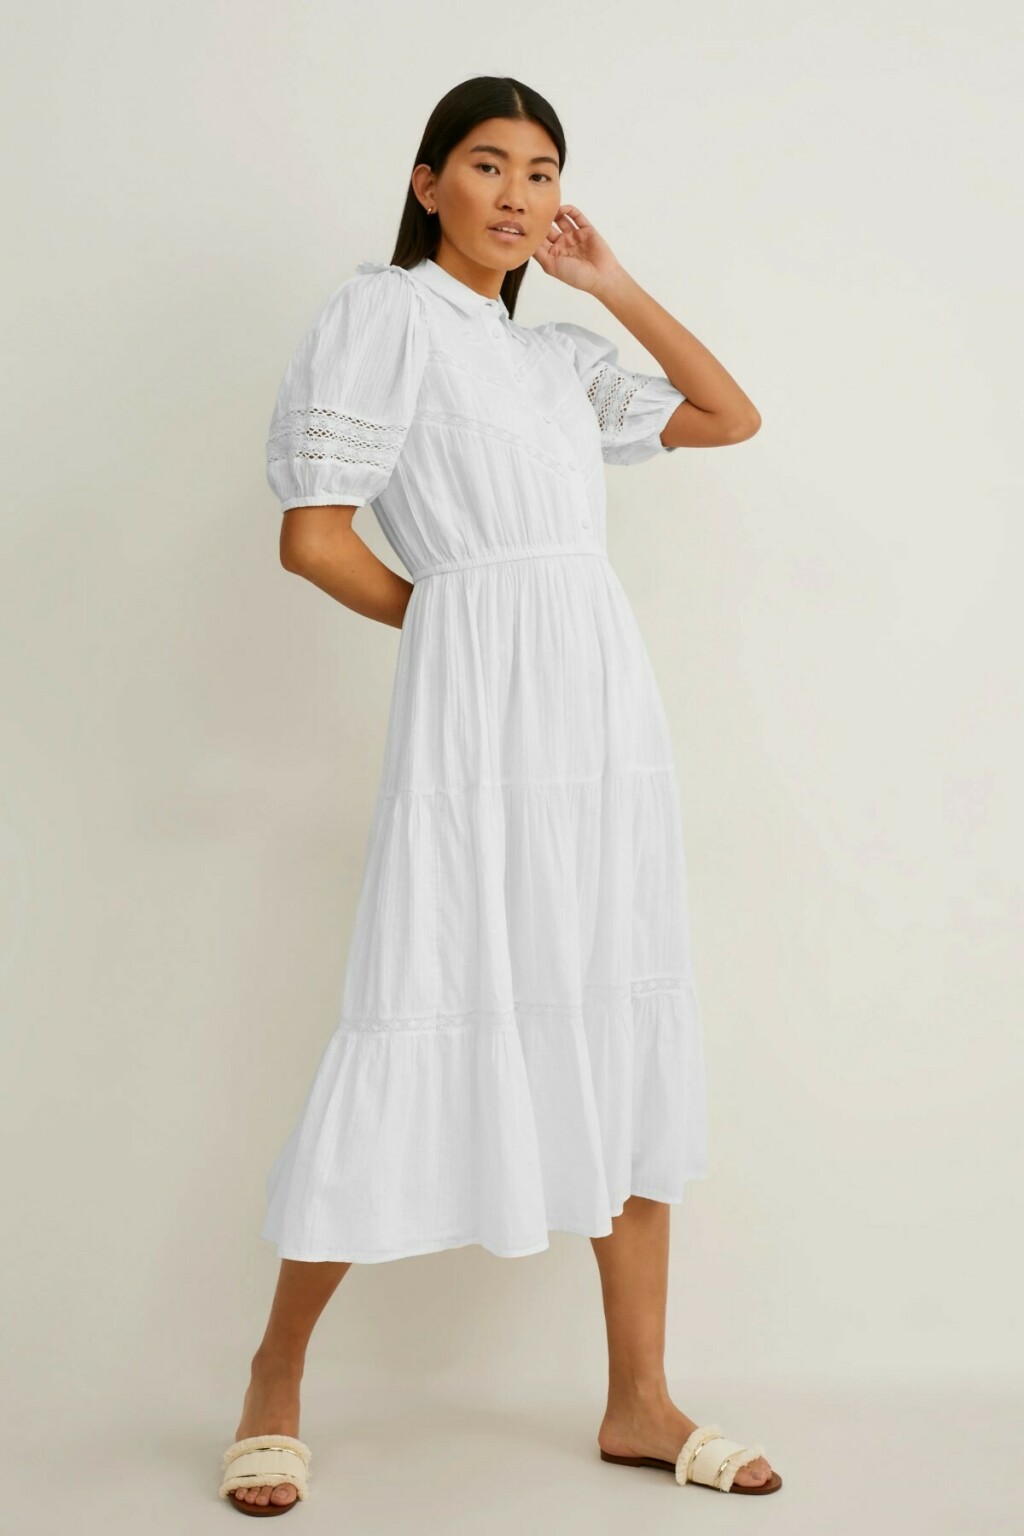 Ponuda bijelih haljina u trgovinama - 11